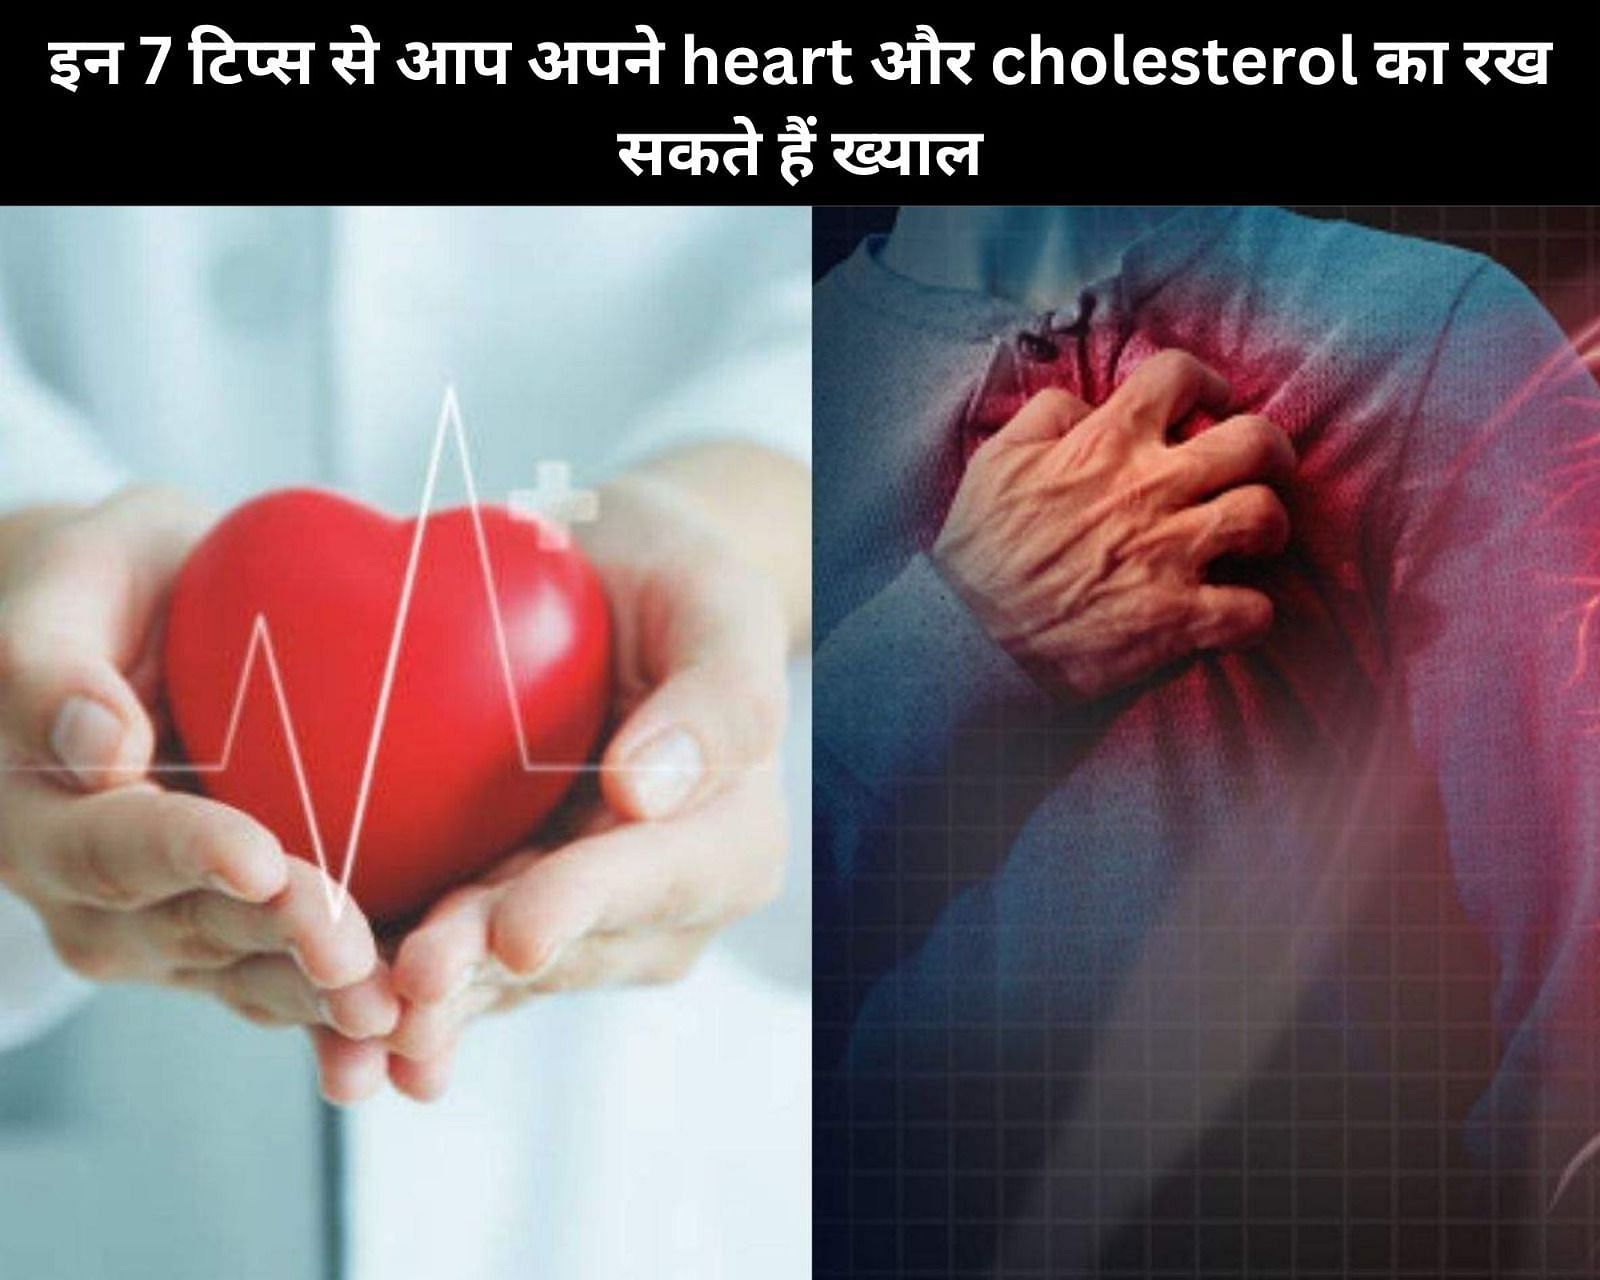 इन 7 टिप्स से आप अपने heart और cholesterol का रख सकते हैं ख्याल (फोटो - sportskeedaहिन्दी)